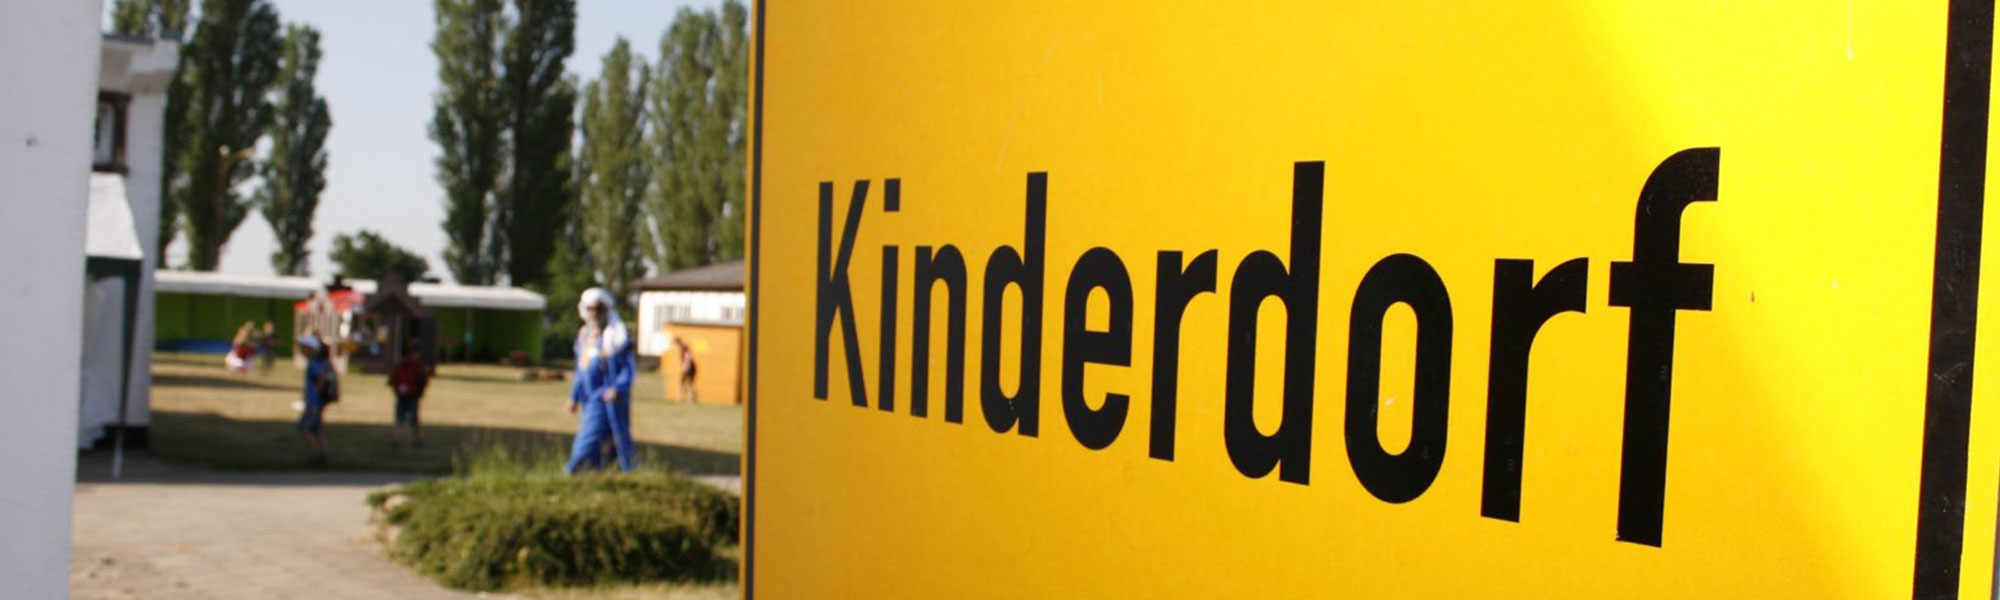 Schild Kinderdorf